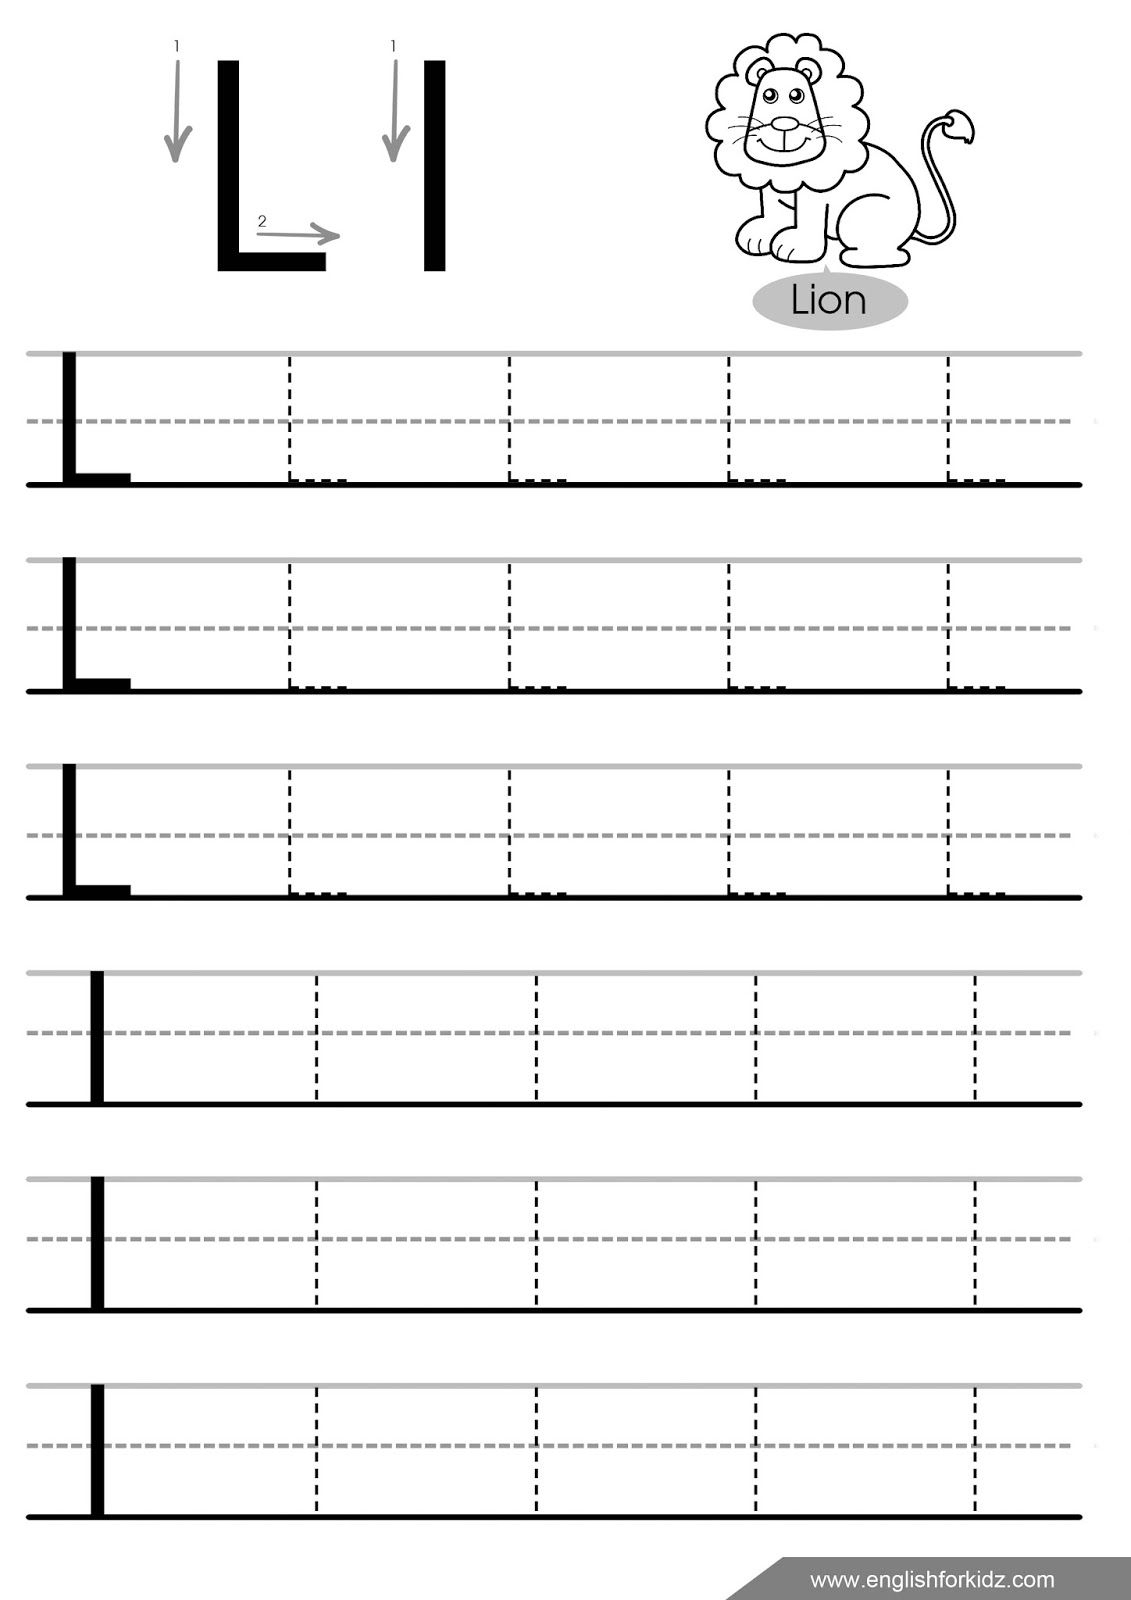 Printable Letter L Tracing Worksheets For Preschool.free Writing | Free Printable Letter L Tracing Worksheets